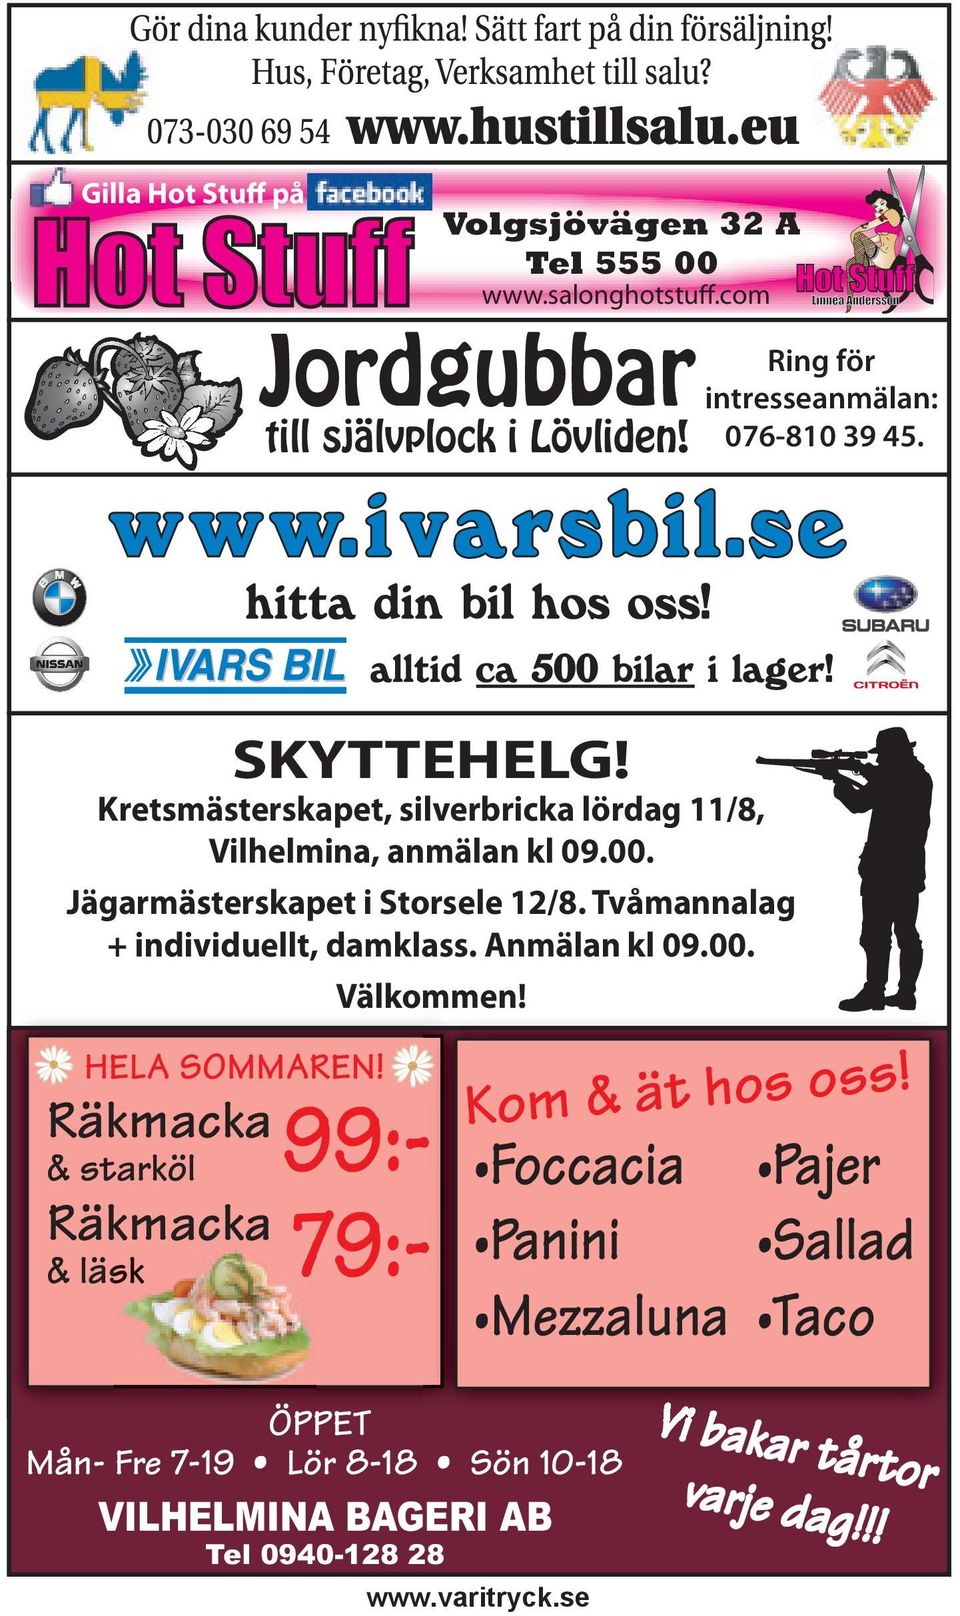 Jägarmästerskapet i Storsele 12/8. Tvåmannalag + individuellt, damklass. Anmälan kl 09.00. HELA SOMMAREN!